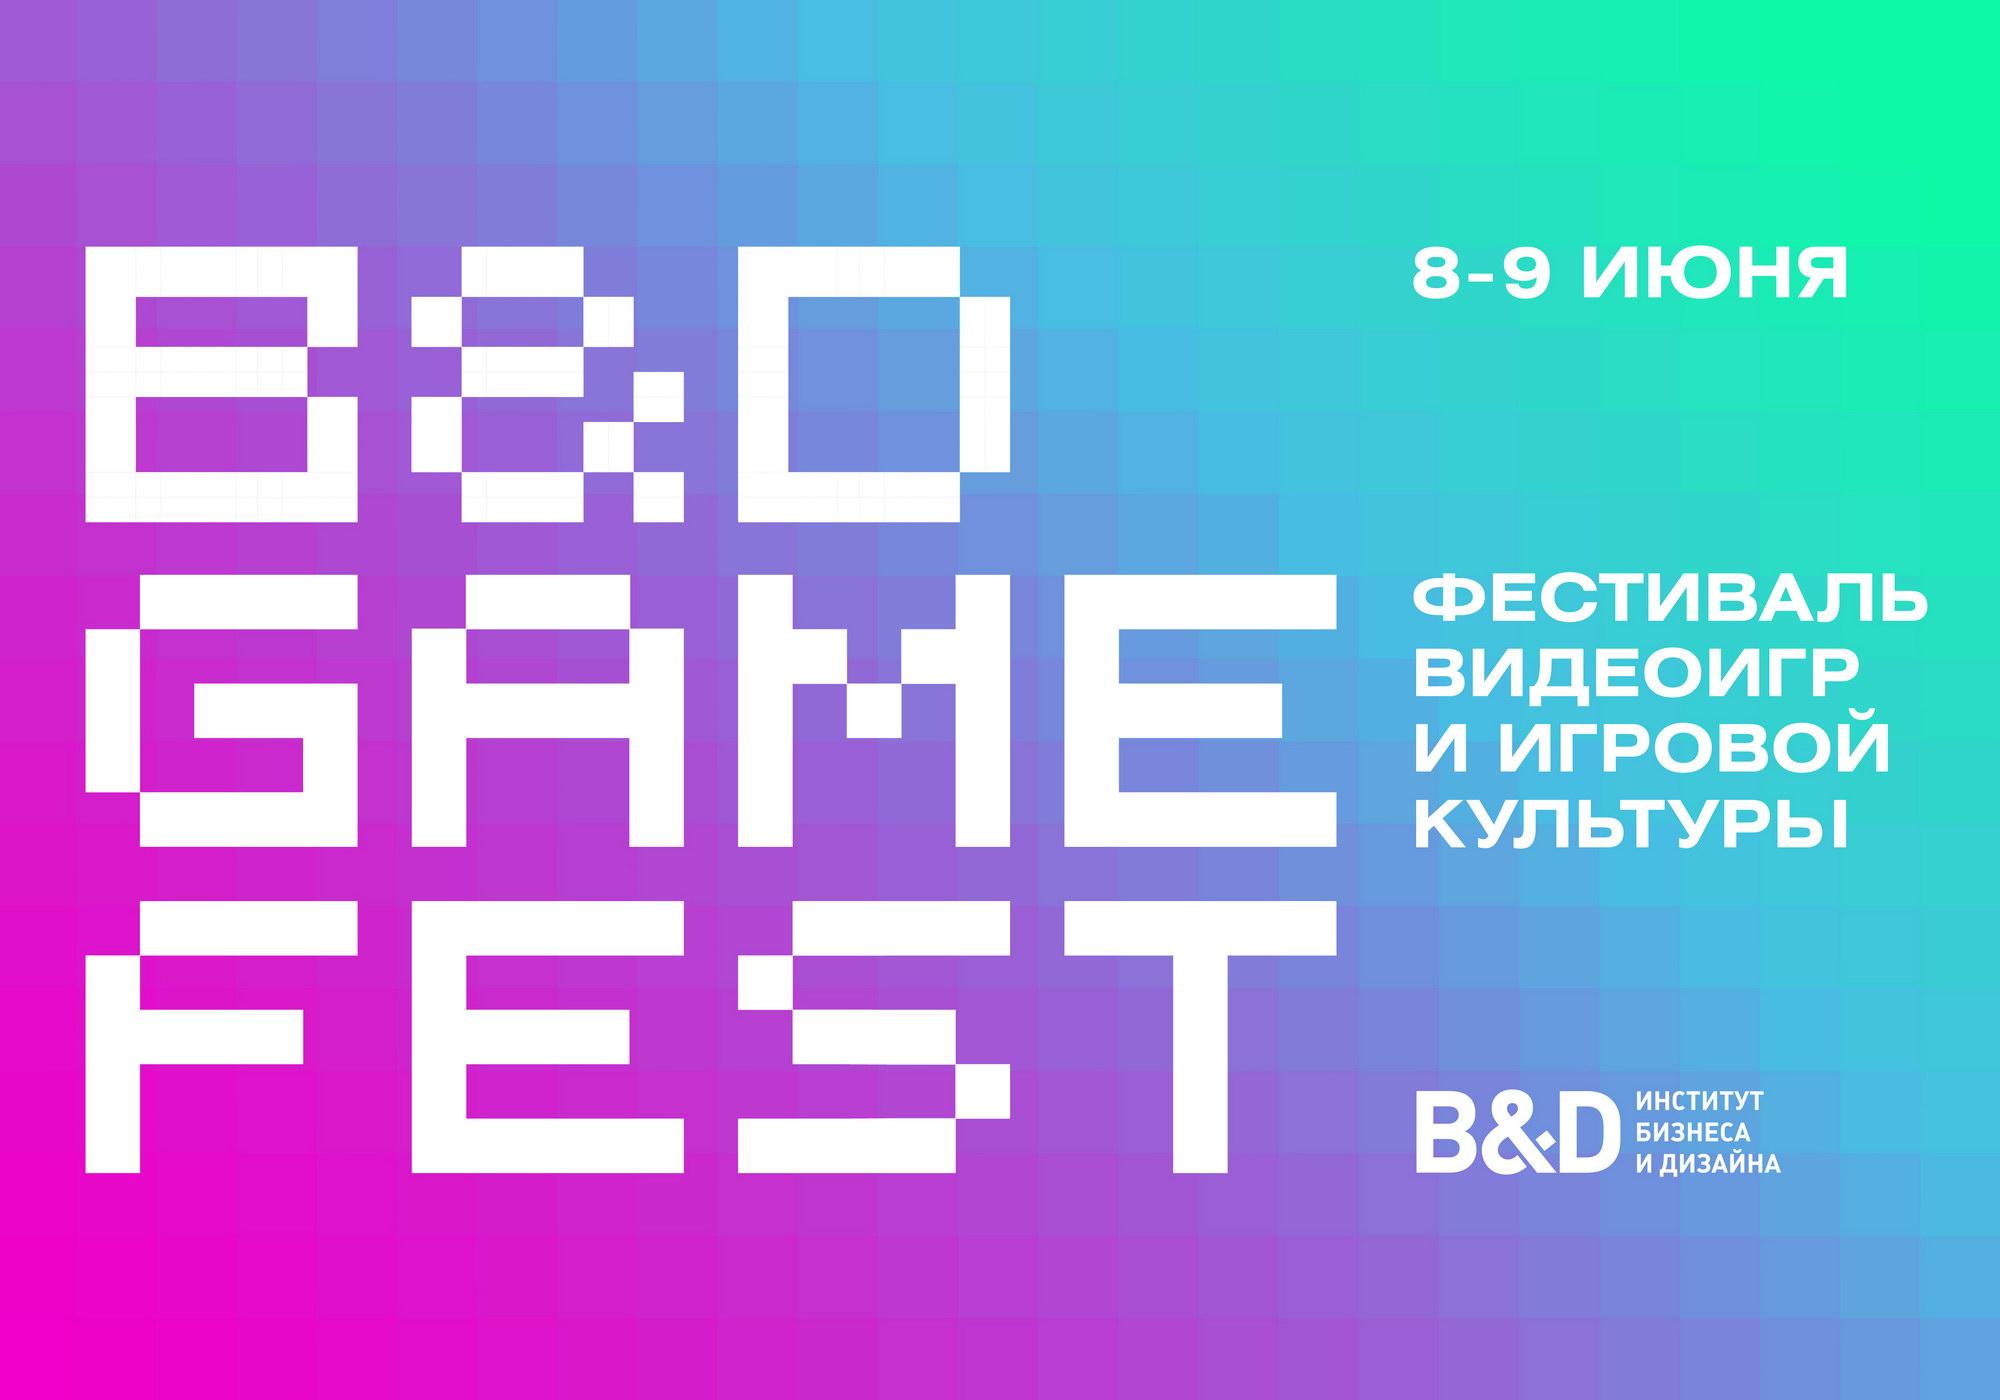 B&amp;D GAME FEST<br>Фестиваль видеоигр<br>и игровой культуры